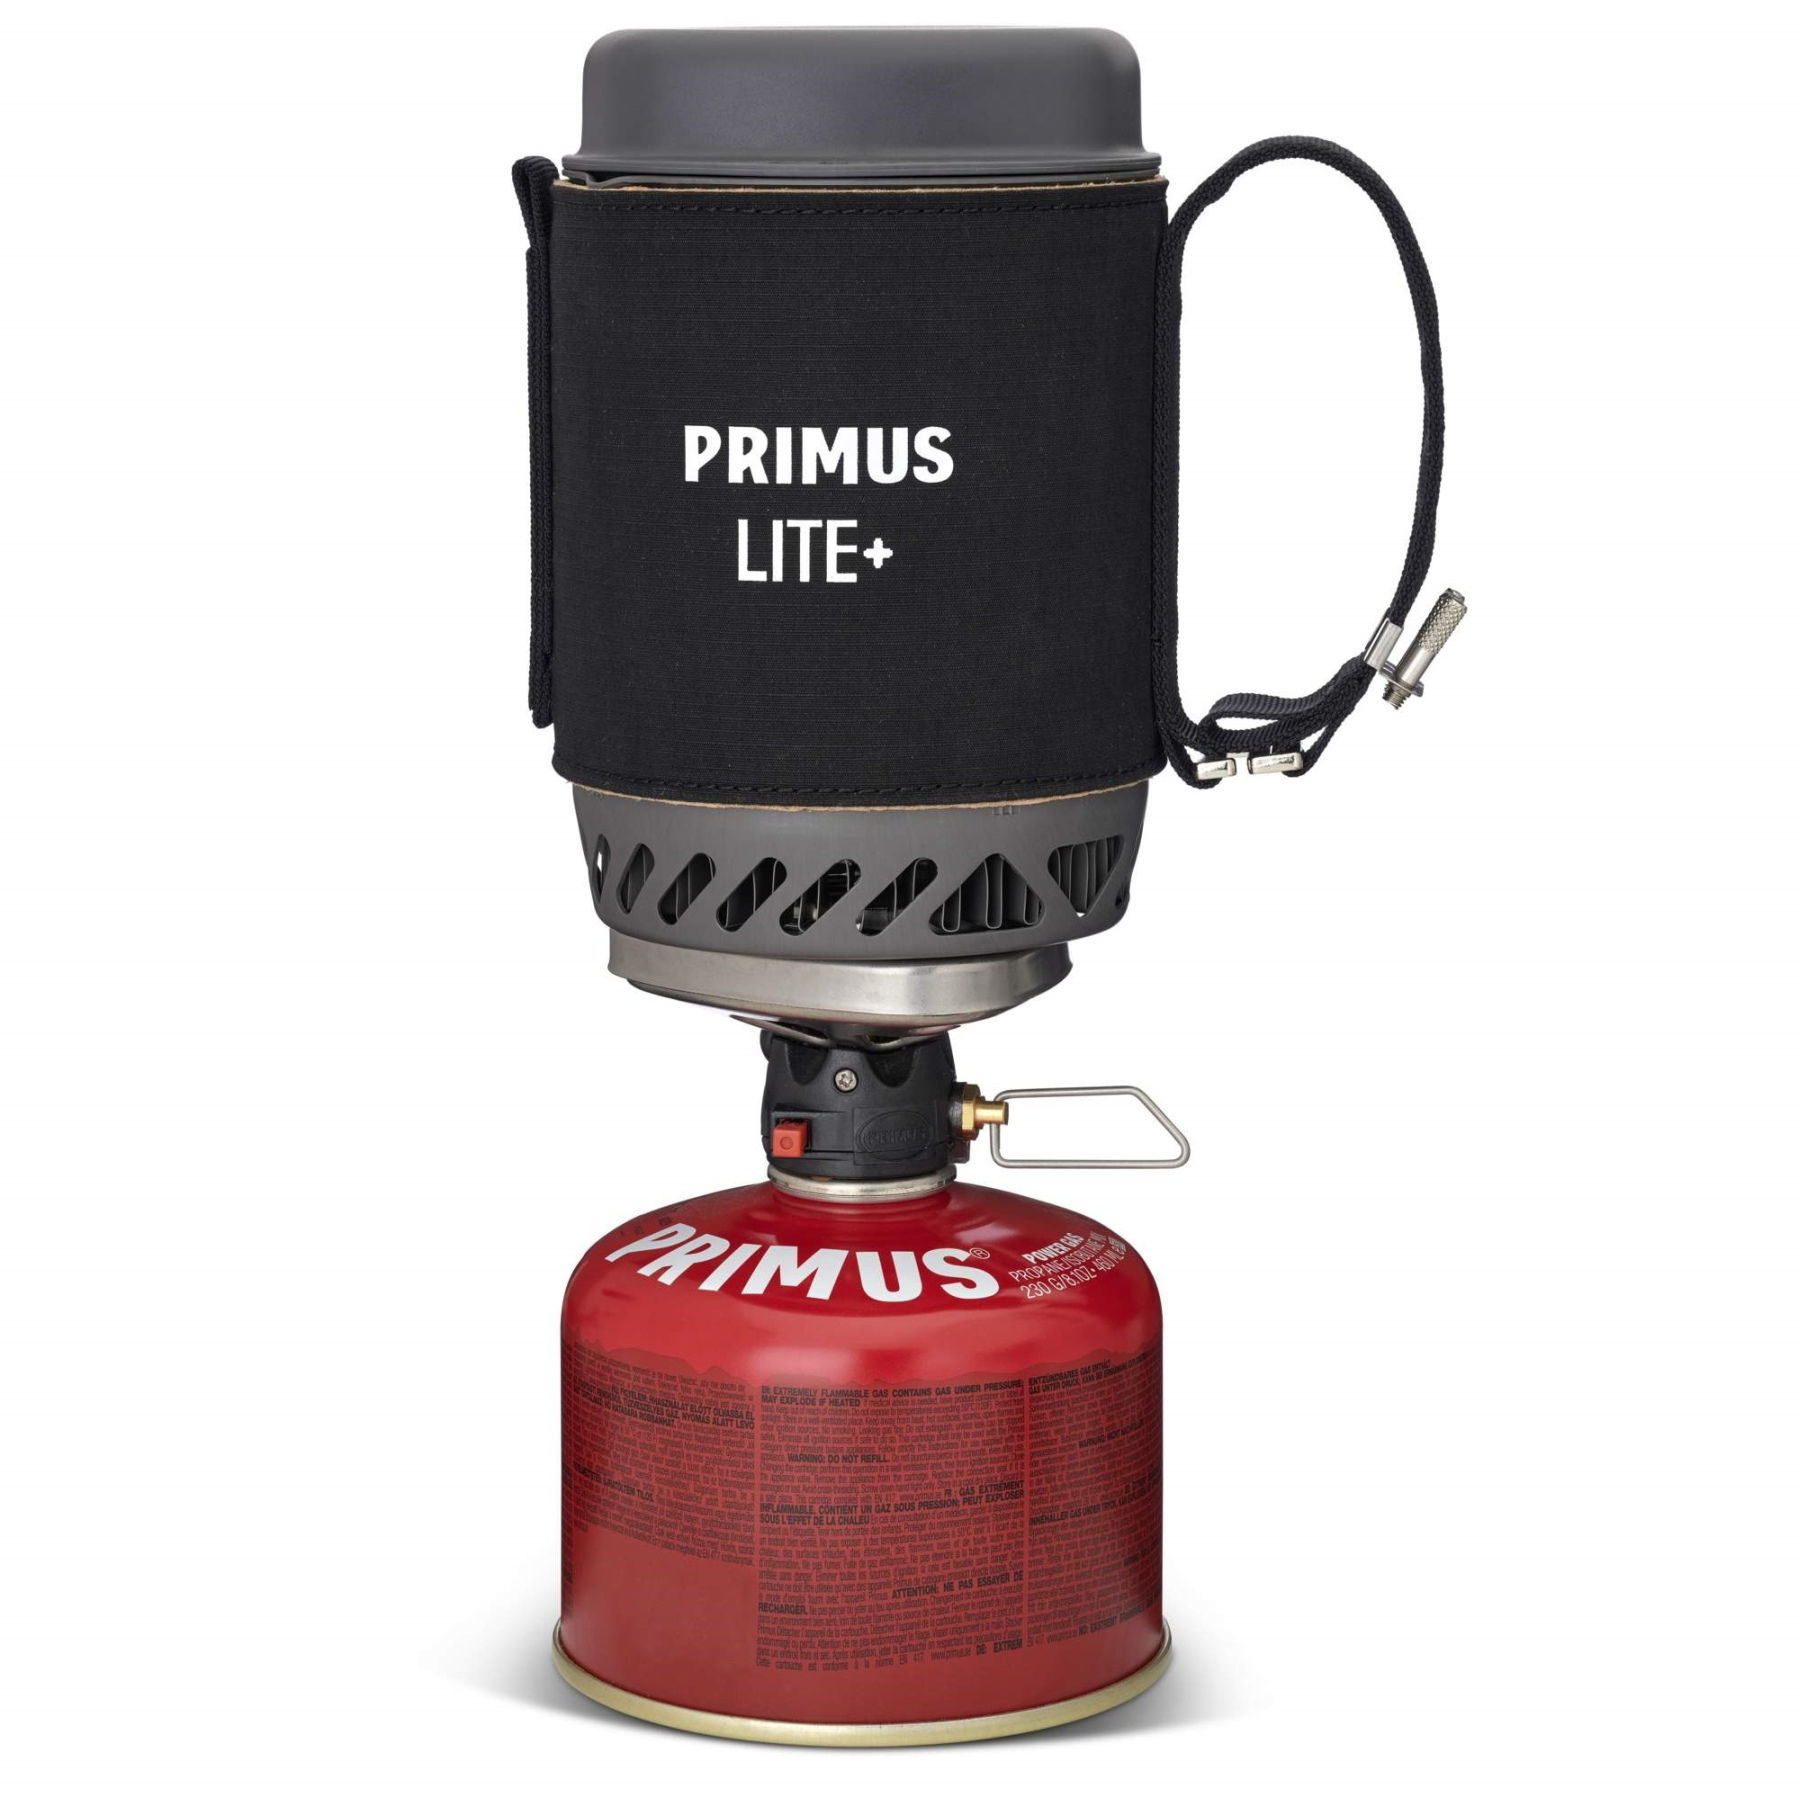 Primus Lite Plus Stove System in Black